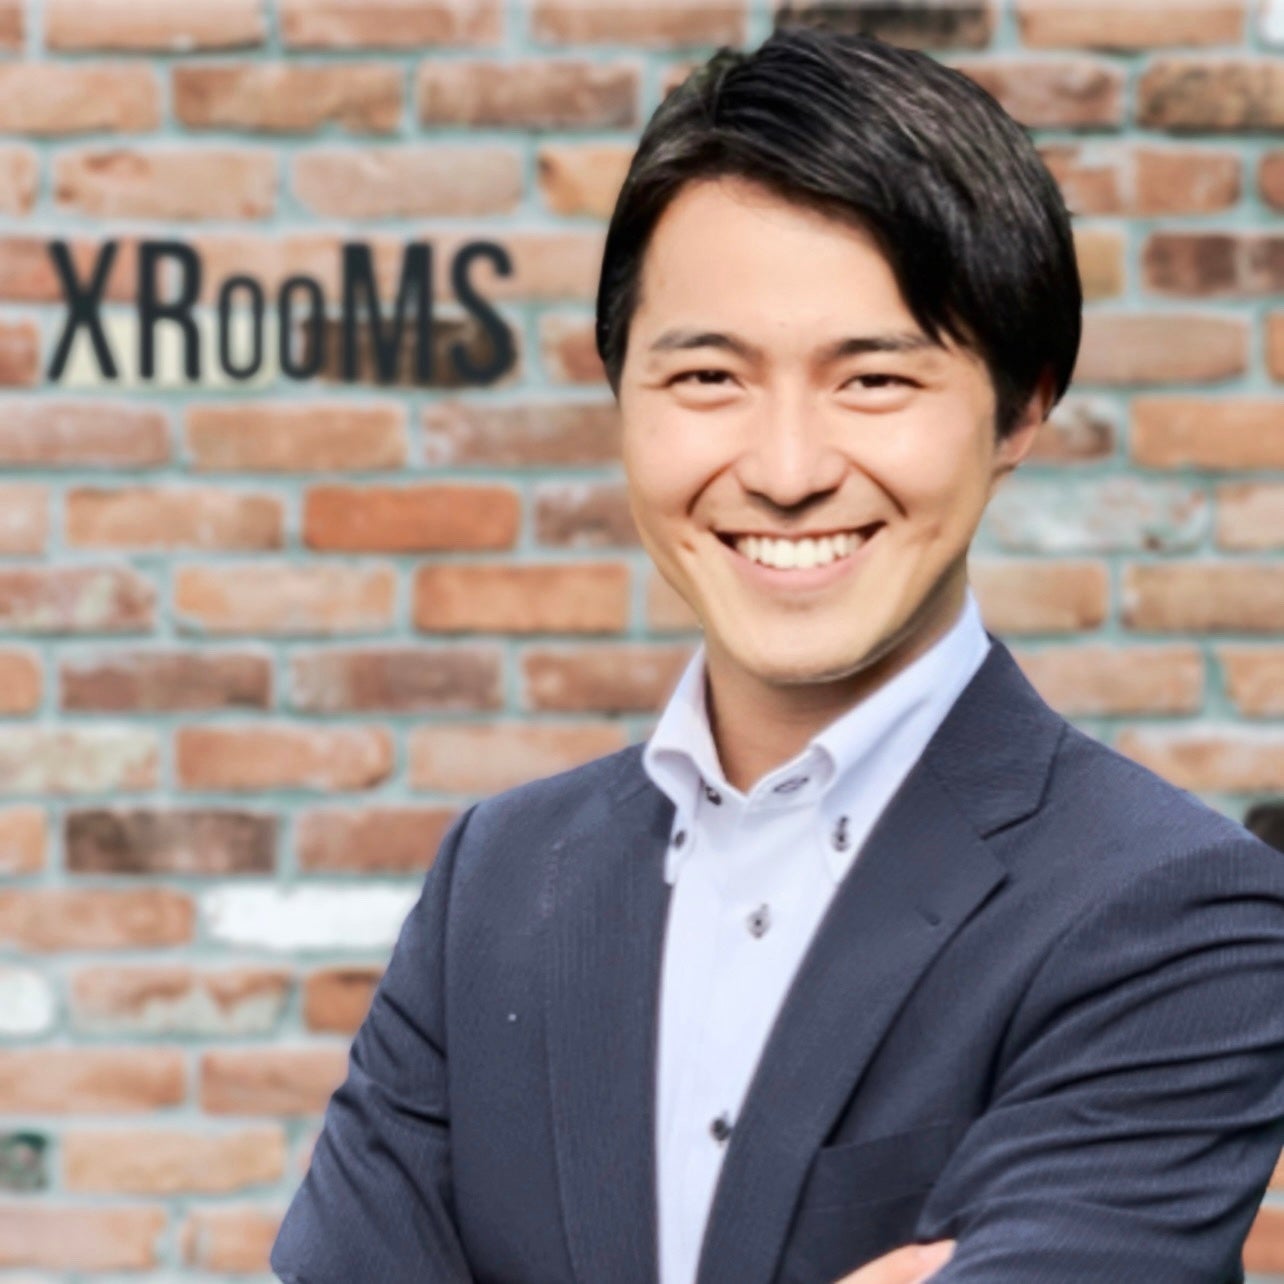 75％以上が「おとり物件なしのお部屋探し」「未公開物件」を期待 業者専用データベースで探す賃貸サービス利用者調査 XROOMS Proが公開のサブ画像5